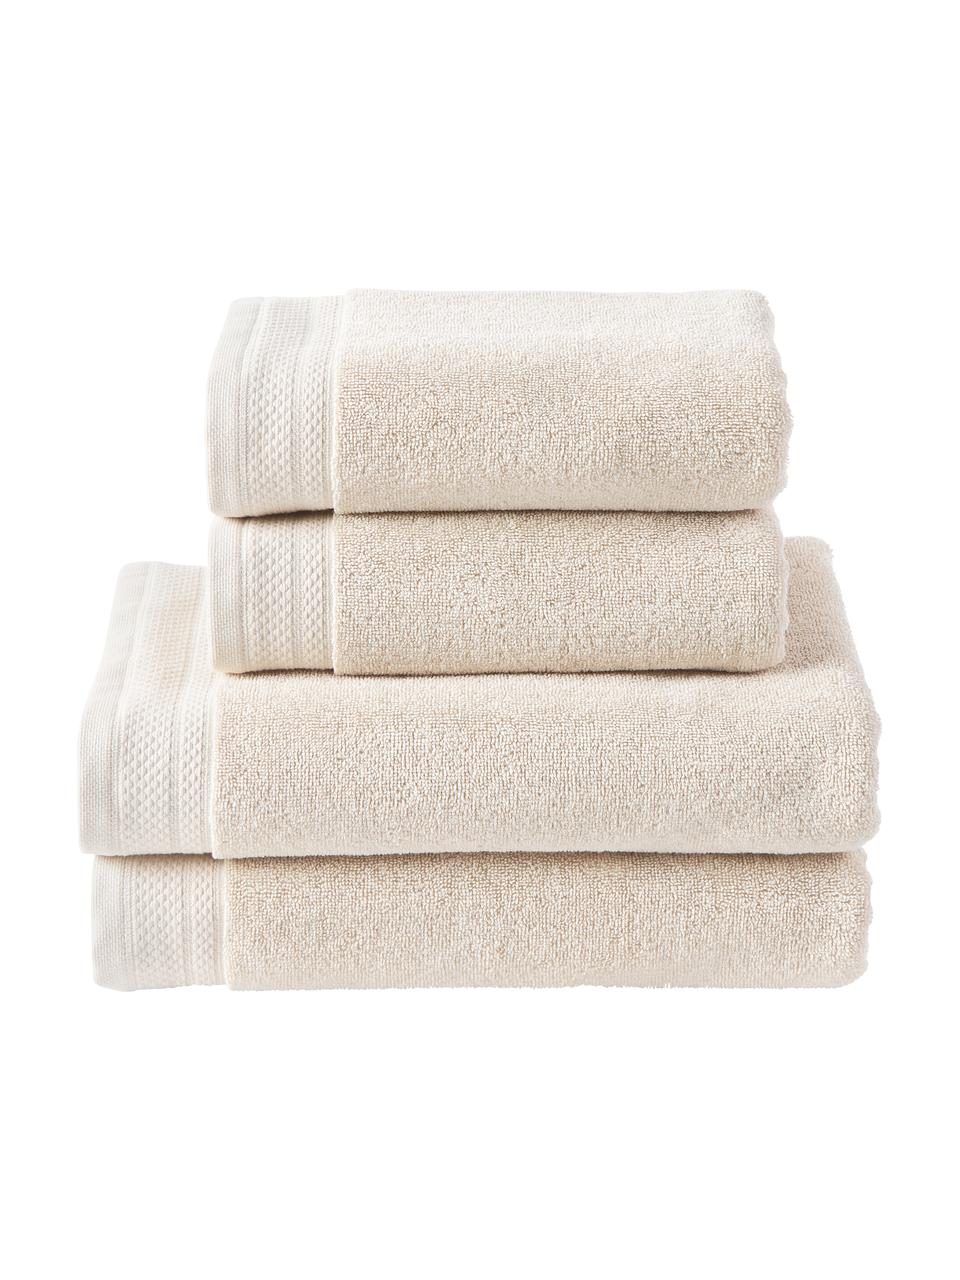 Set de toallas de algodón ecológico Premium, 4 uds., 100% algodón con certificado GOTS
Gramaje superior 600 g/m²

El material utilizado para este producto ha sido probado contra sustancias nocivas y está certificado según el STANDARD 100 por OEKO-TEX®,, IS025 189577, OETI., Beige claro, Set de diferentes tamaños